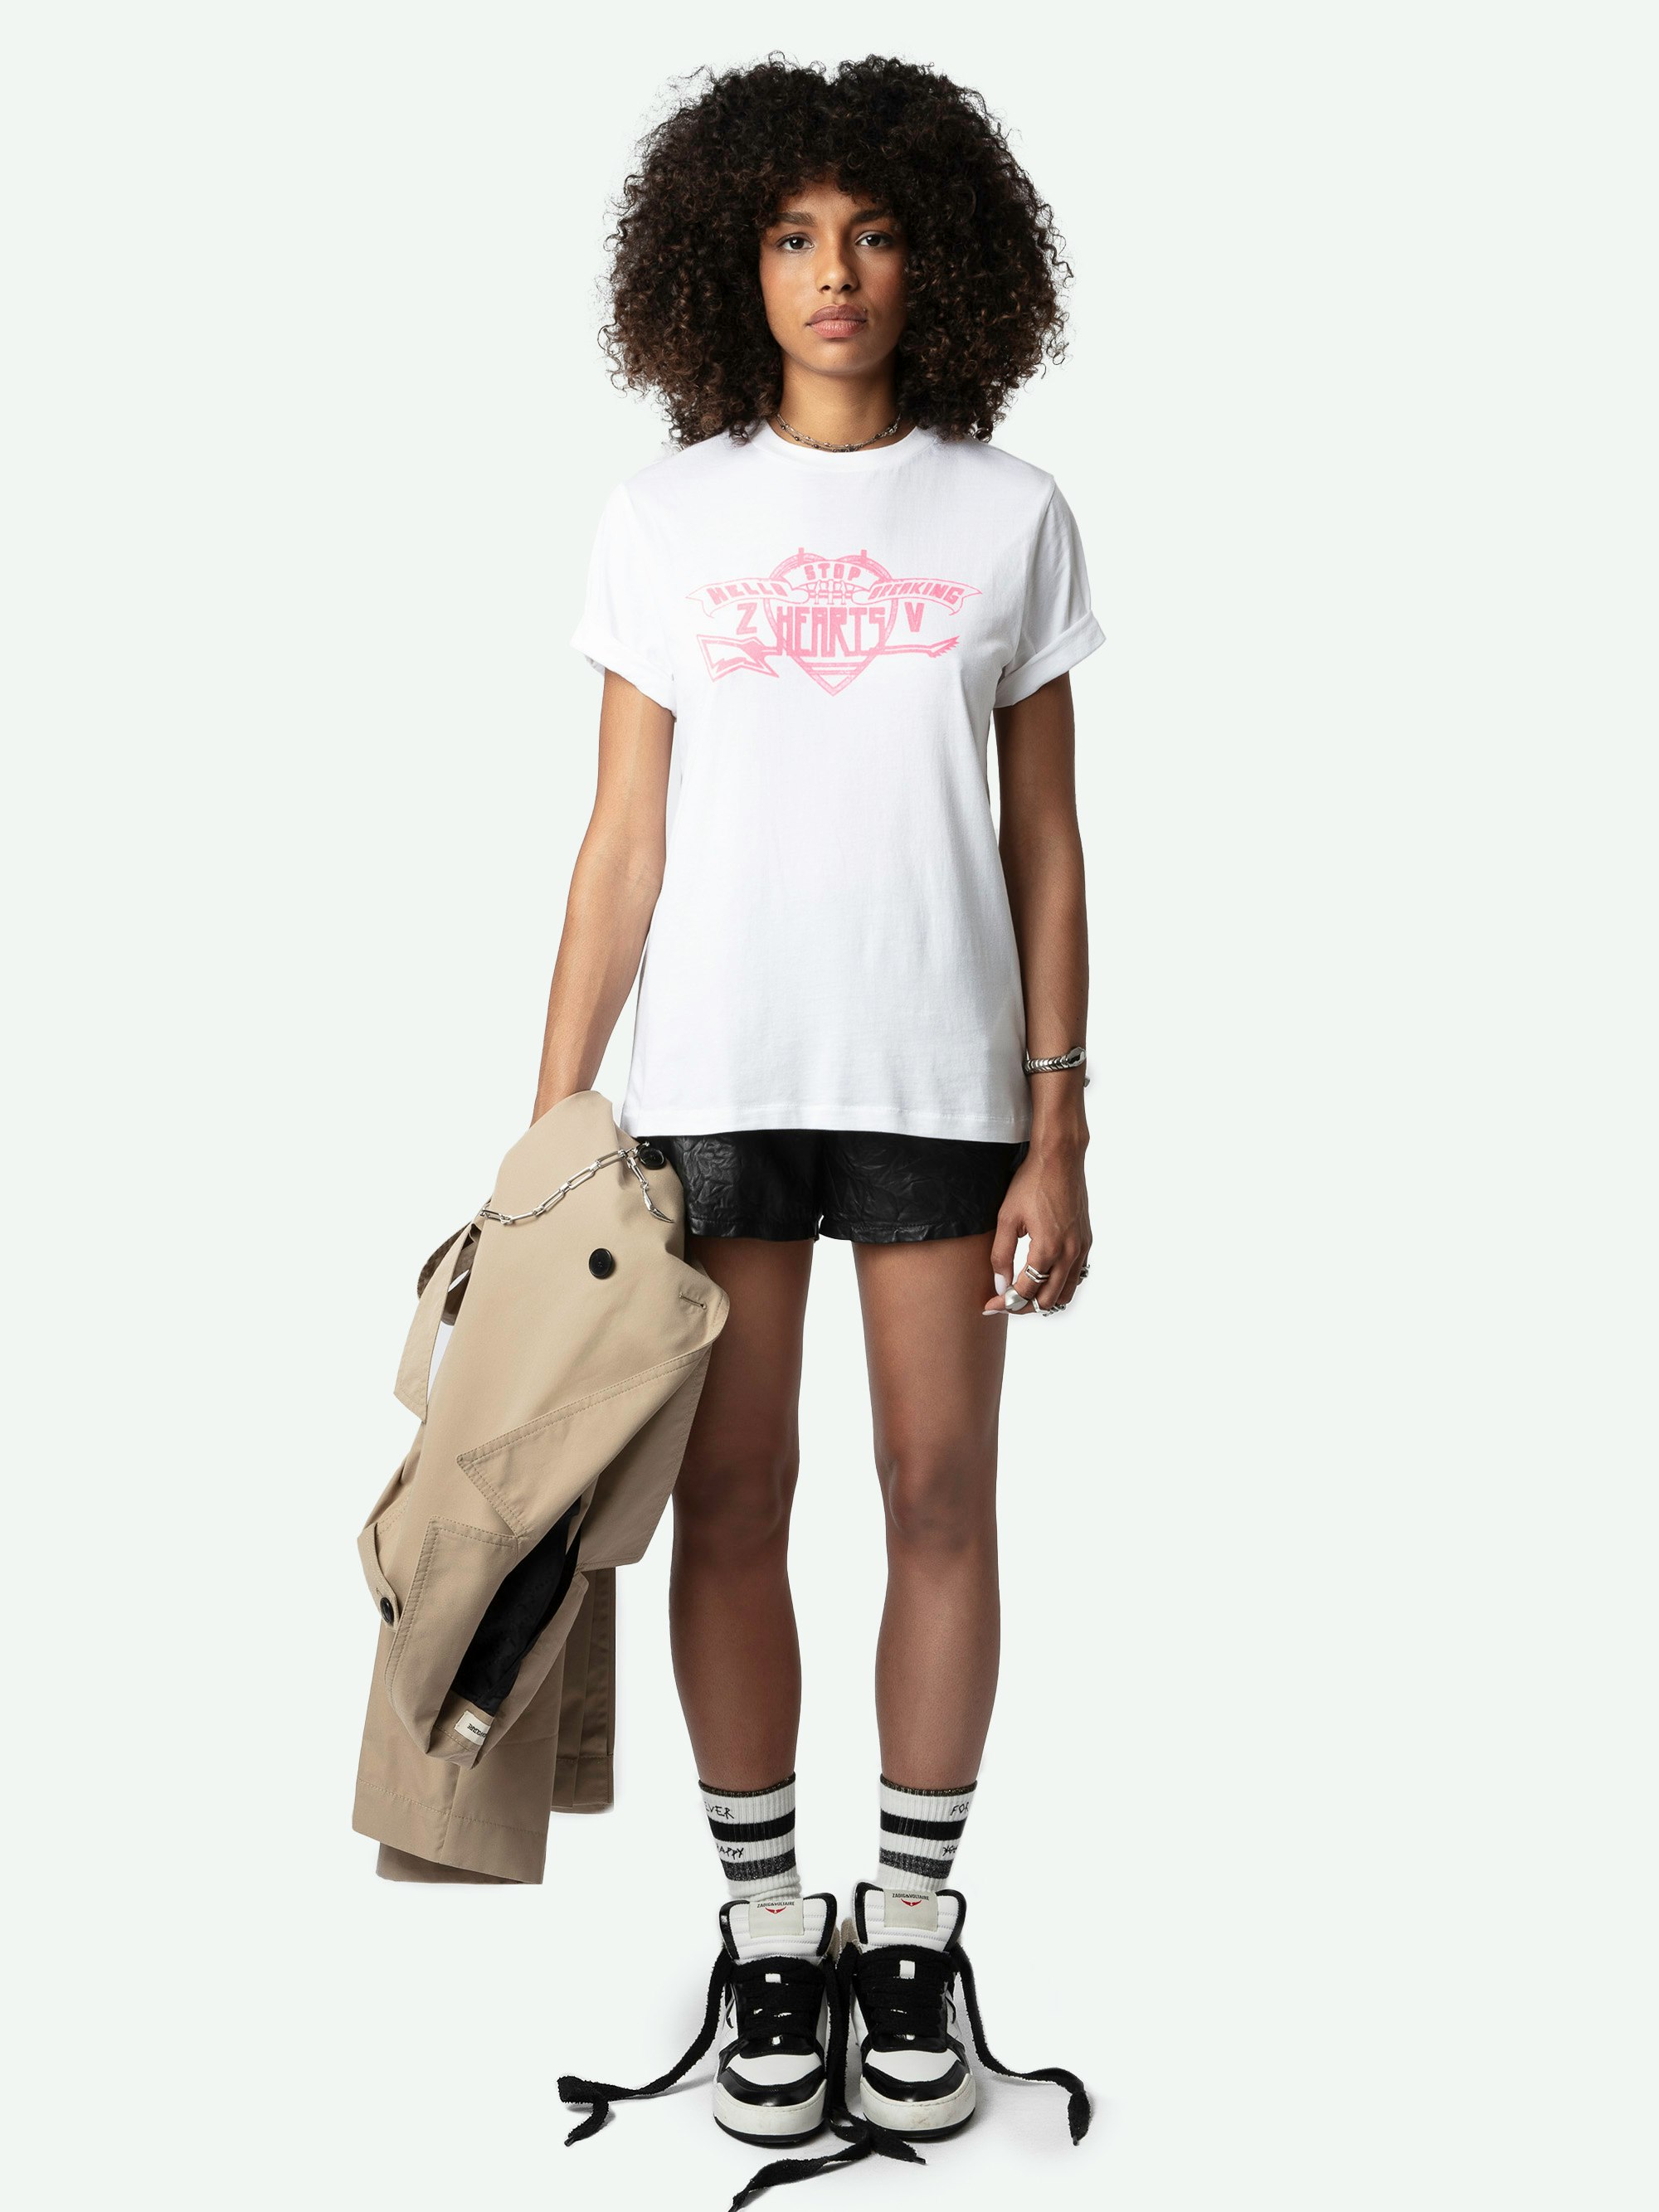 T-shirt Edwin Hearts - T-shirt oversize en coton biologique blanc à manches courtes et flock "Hello Stop Breaking Hearts" à l'avant.